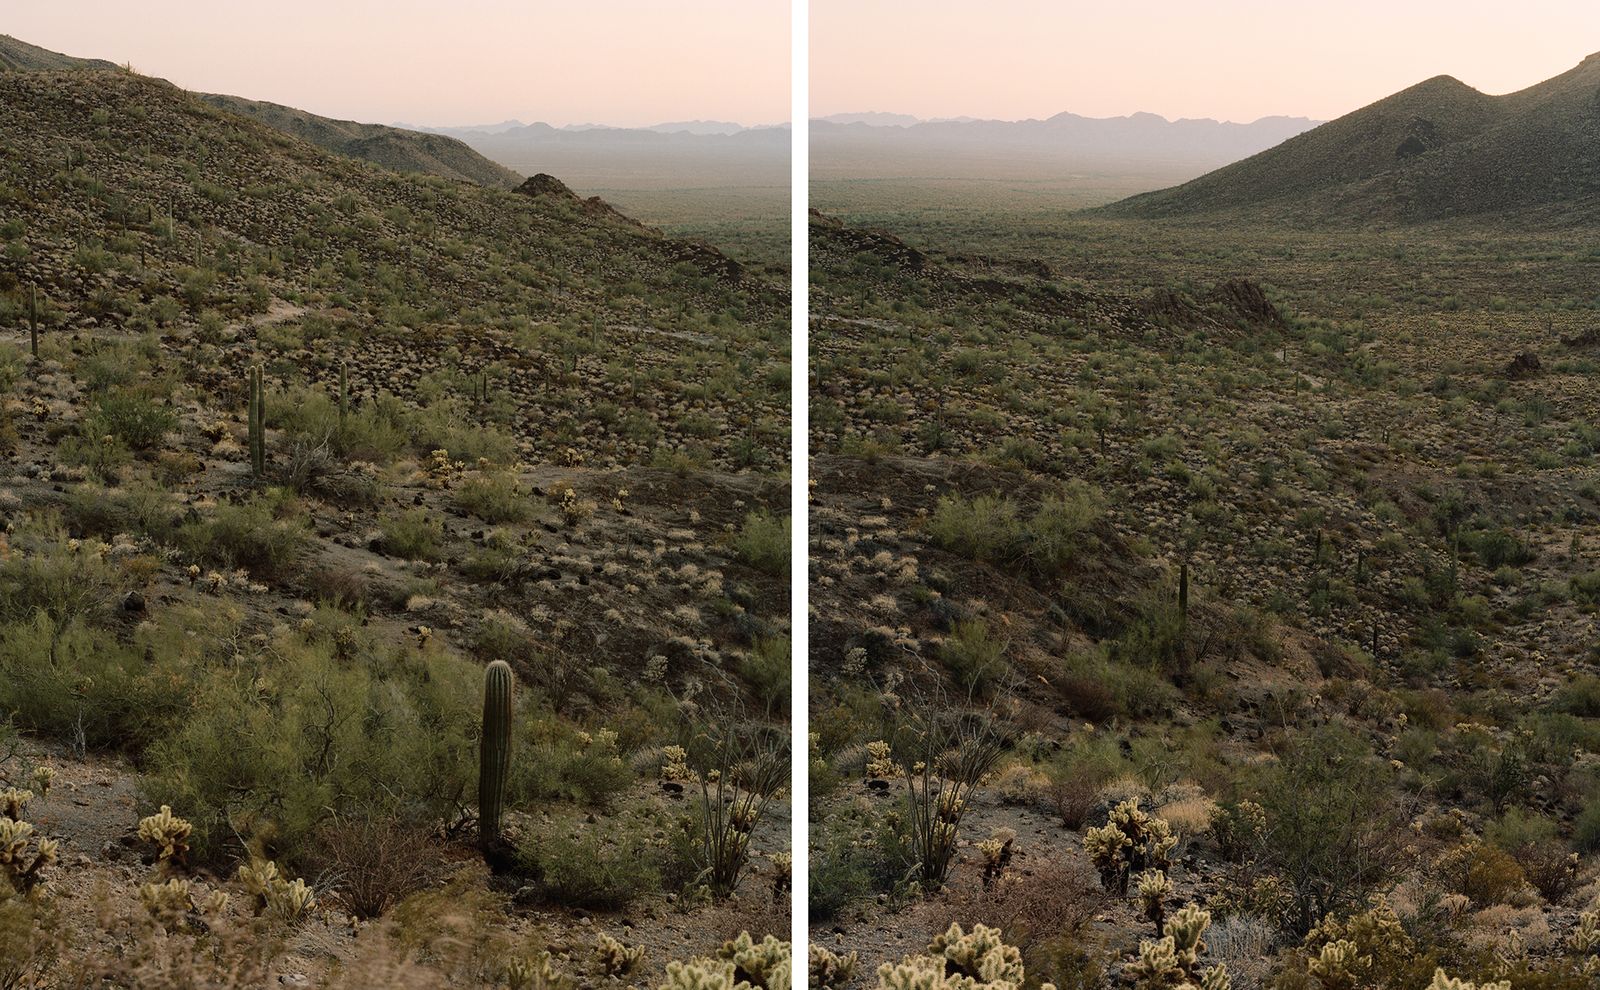 © Benjamin Rasmussen - Sonoran Desert crossing corridor in the Growler Valley. Cabeza Prieta National Wildlife Refuge, Arizona